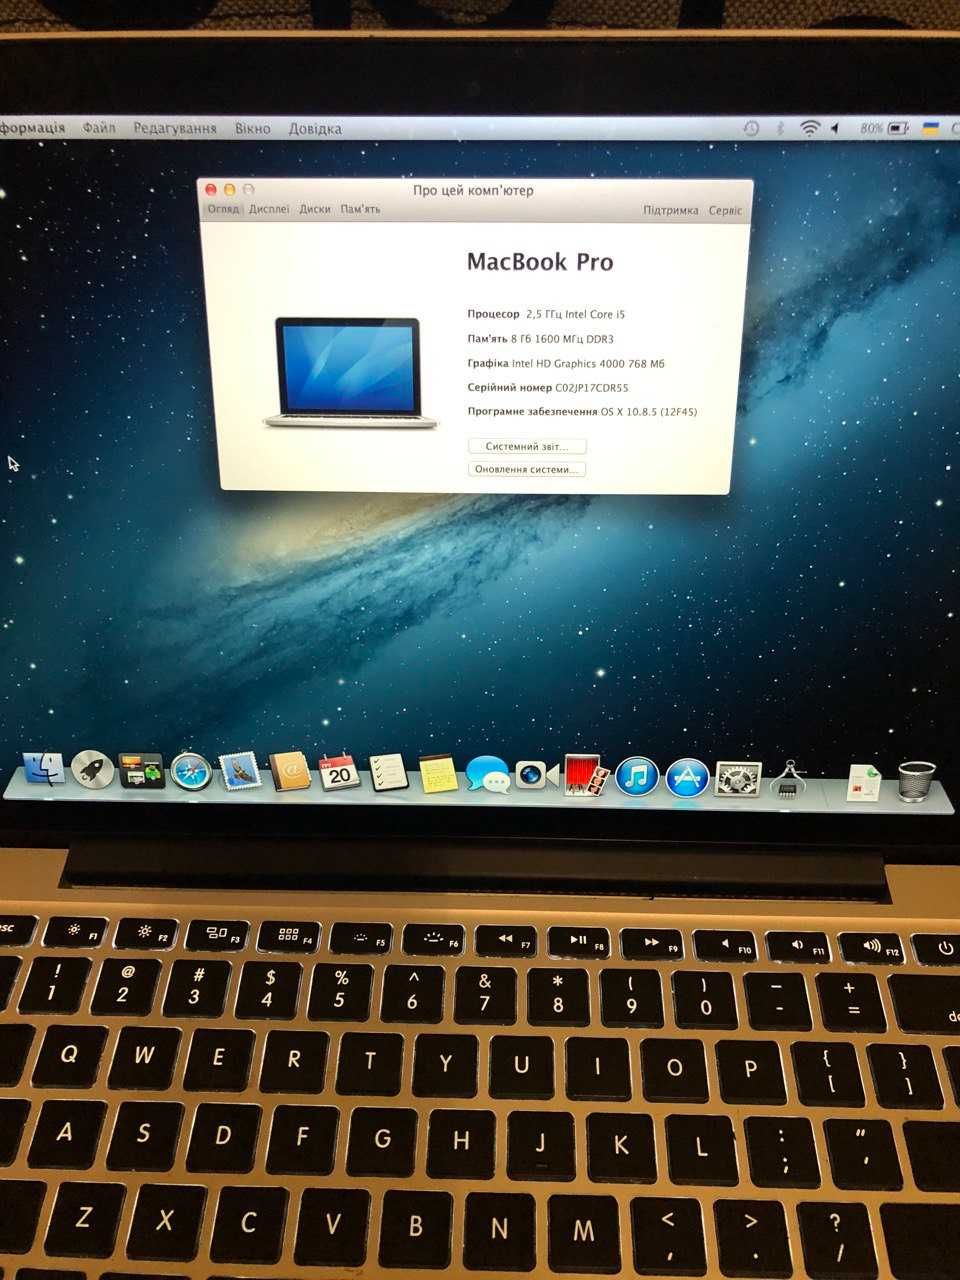 MacBook Pro 13 Late 2012 (2013) Retina A1425